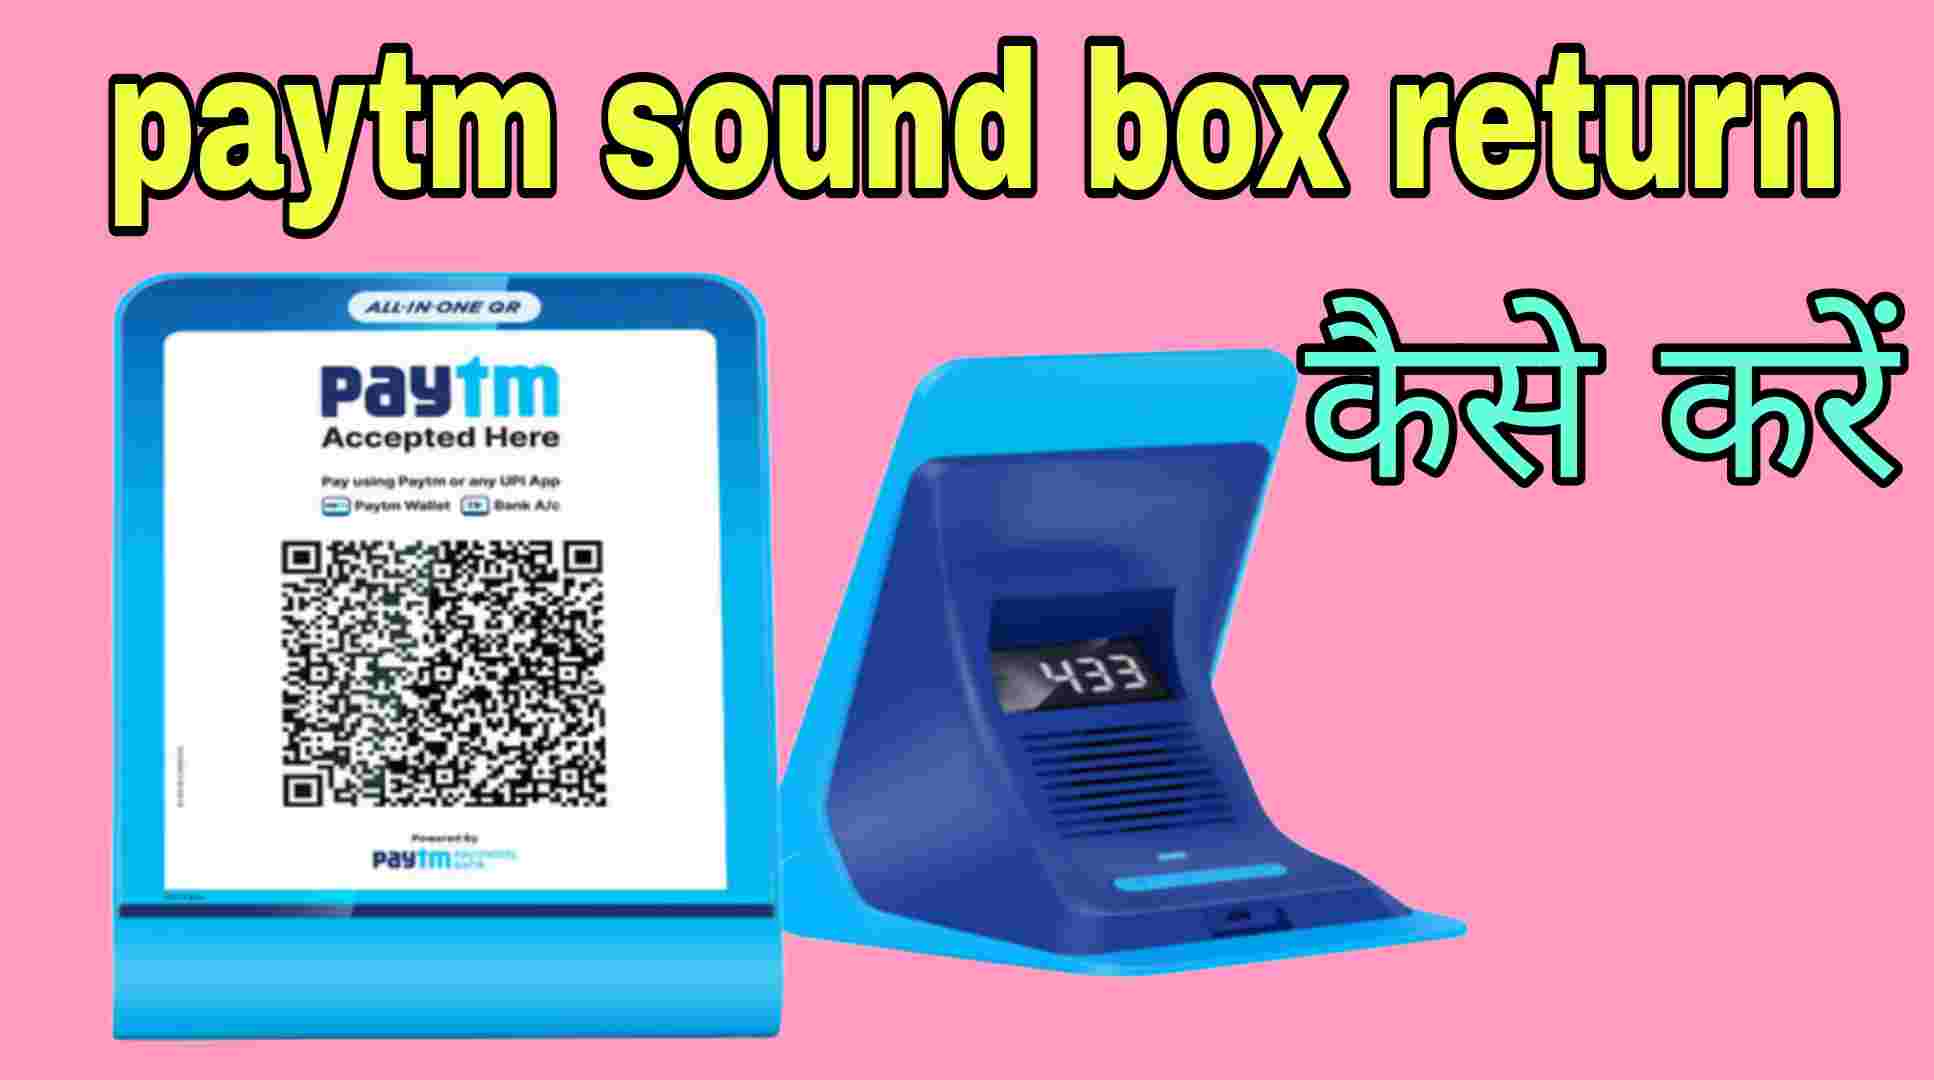 paytm sound box return kaise kare